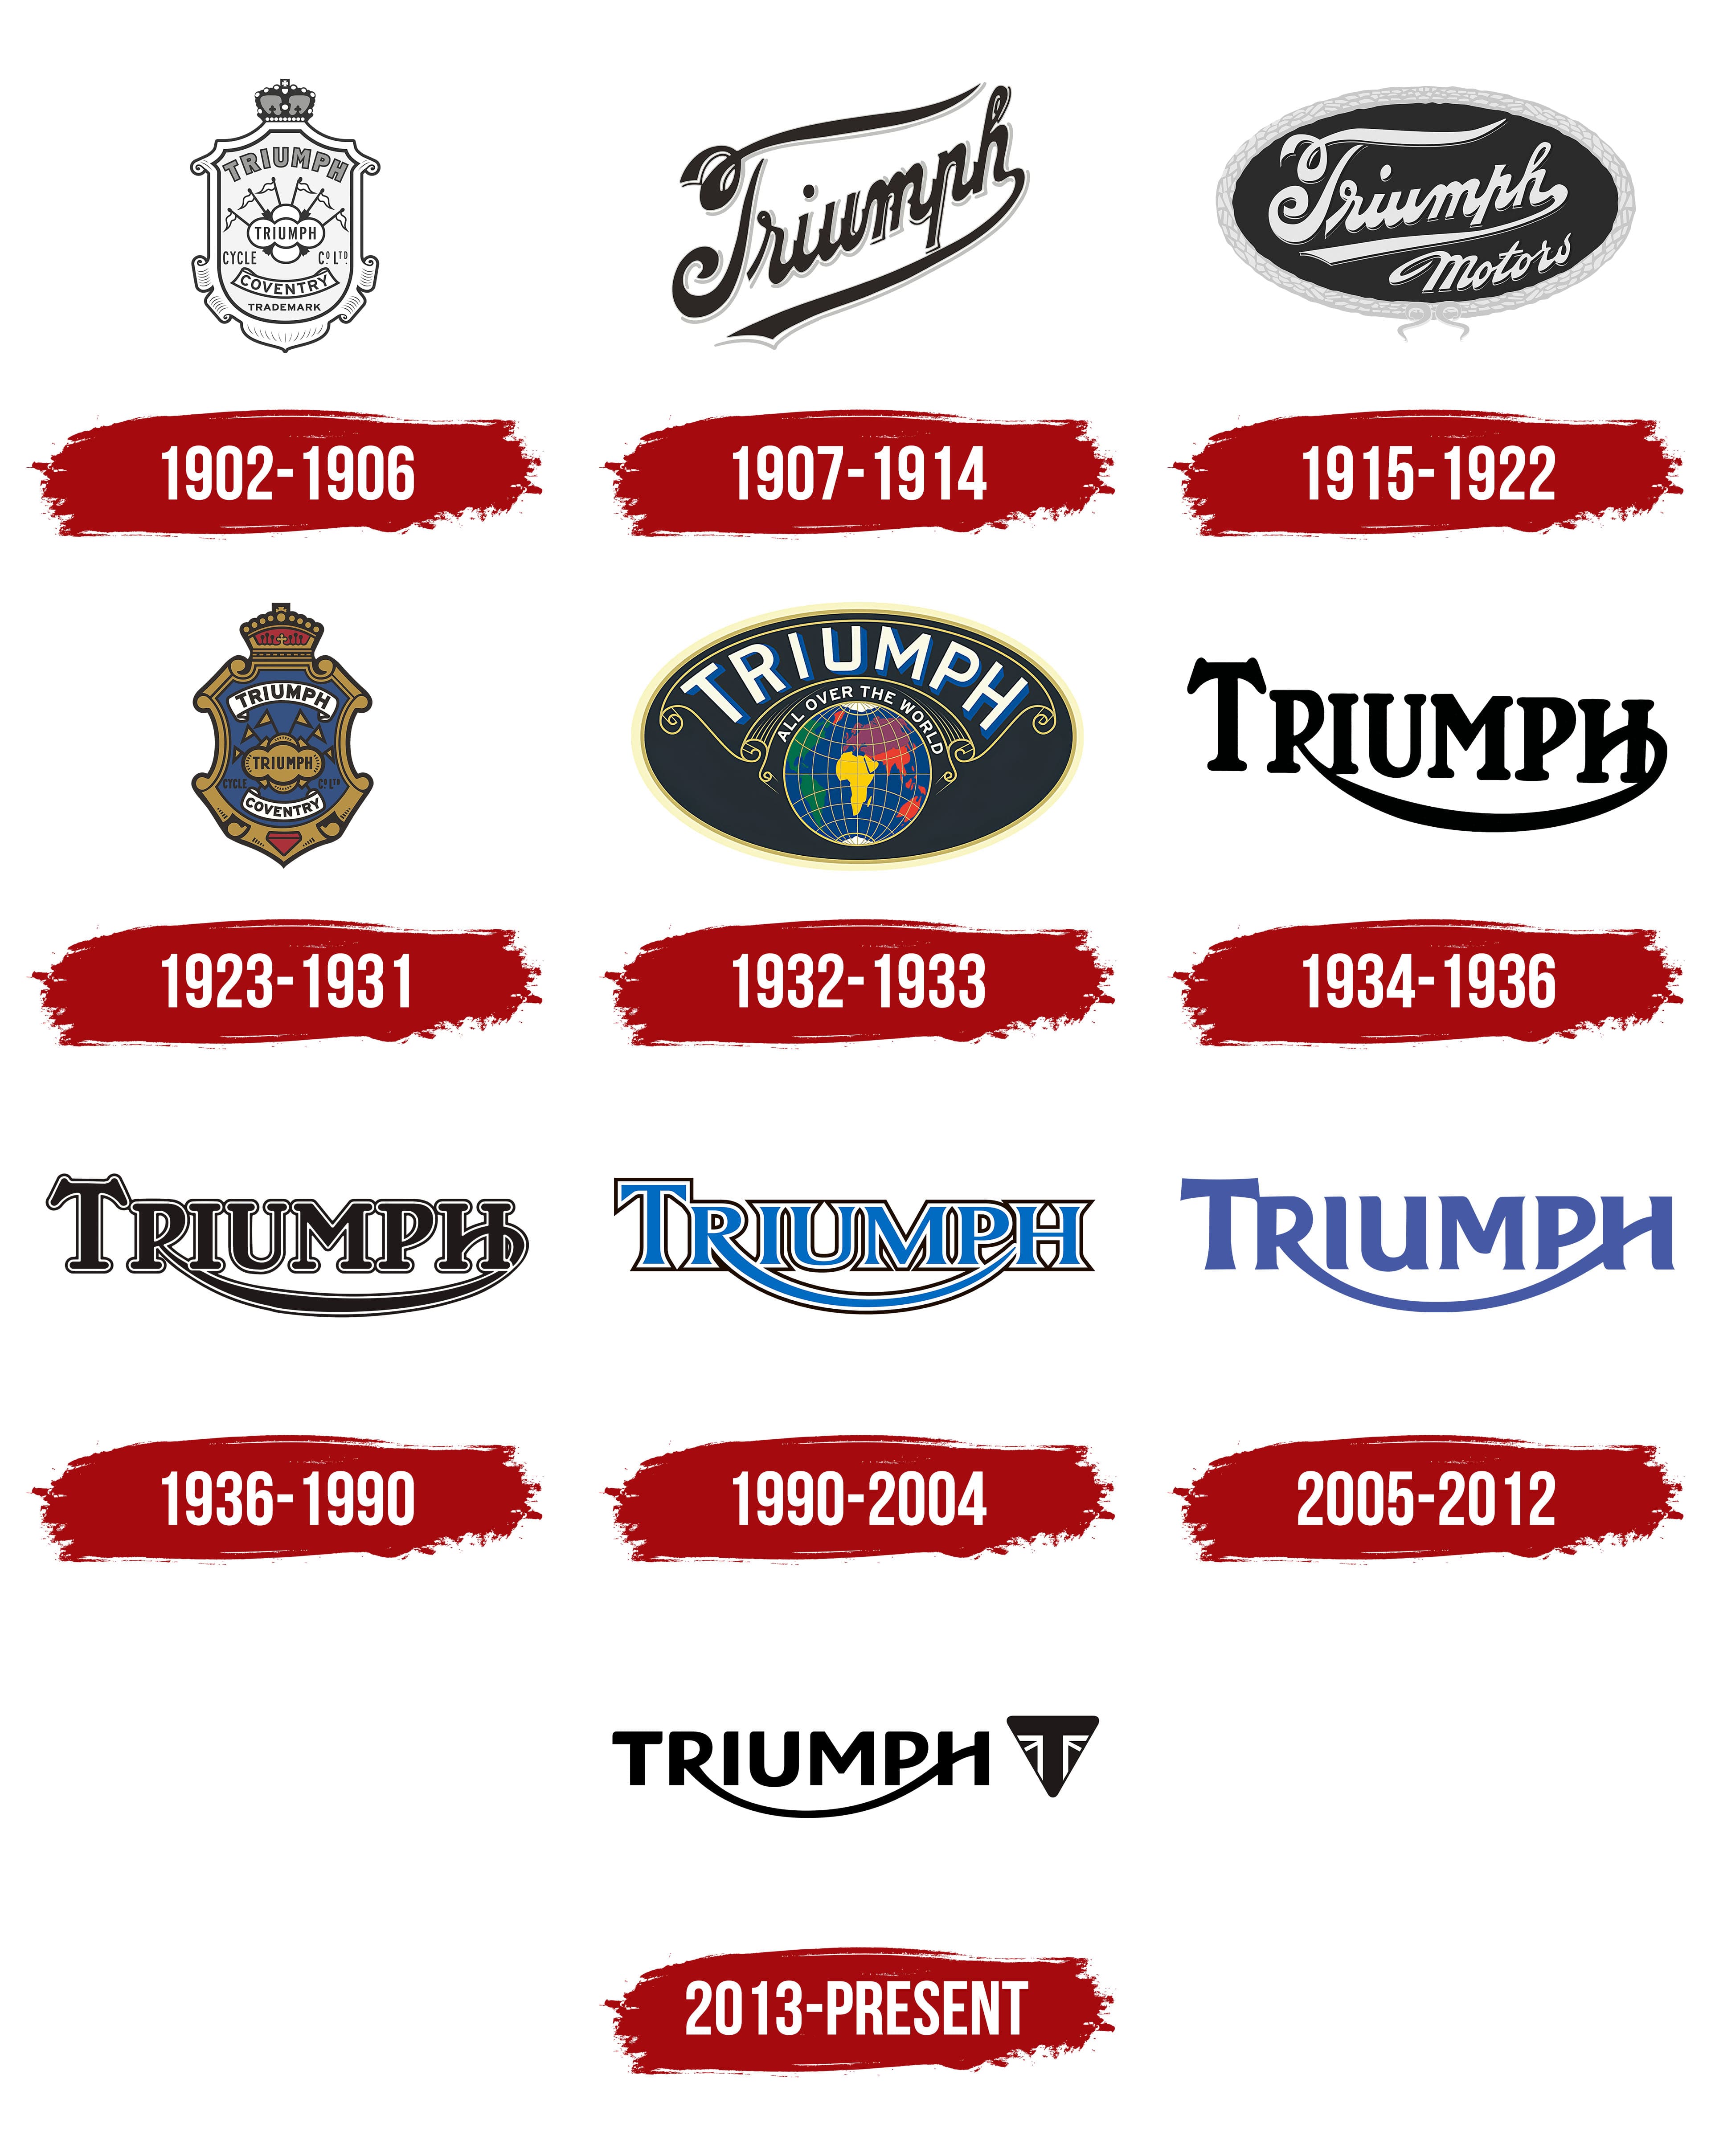 Triumph Direct | Official Triumph Parts, Accessories & Clothing